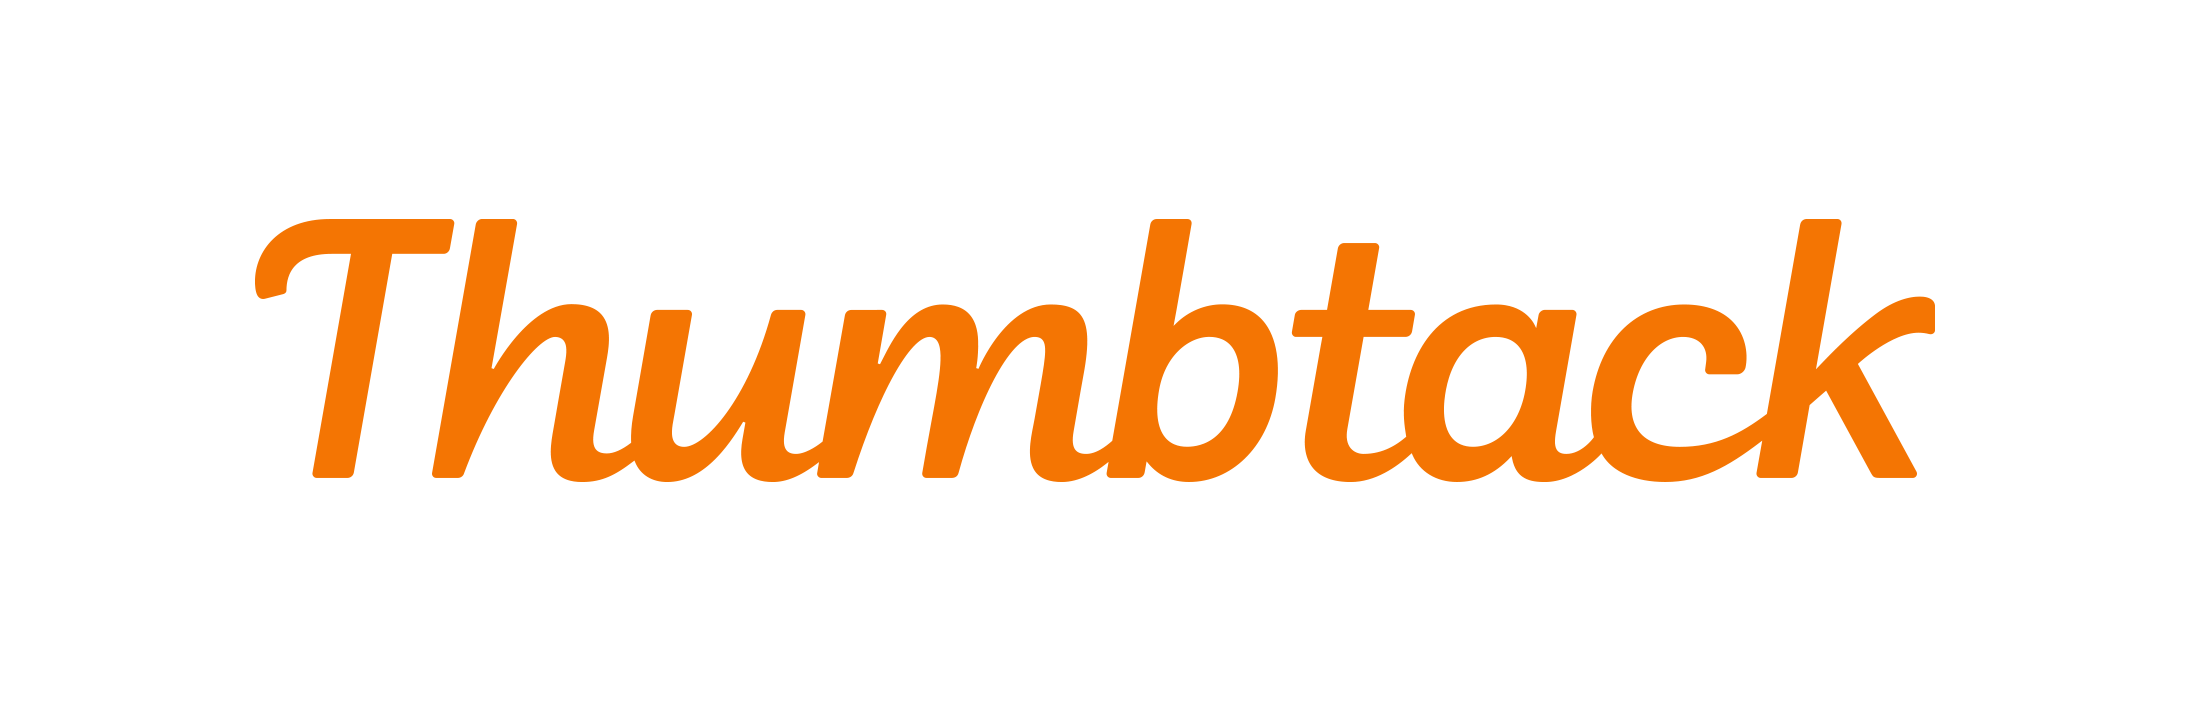 thumbtack logo